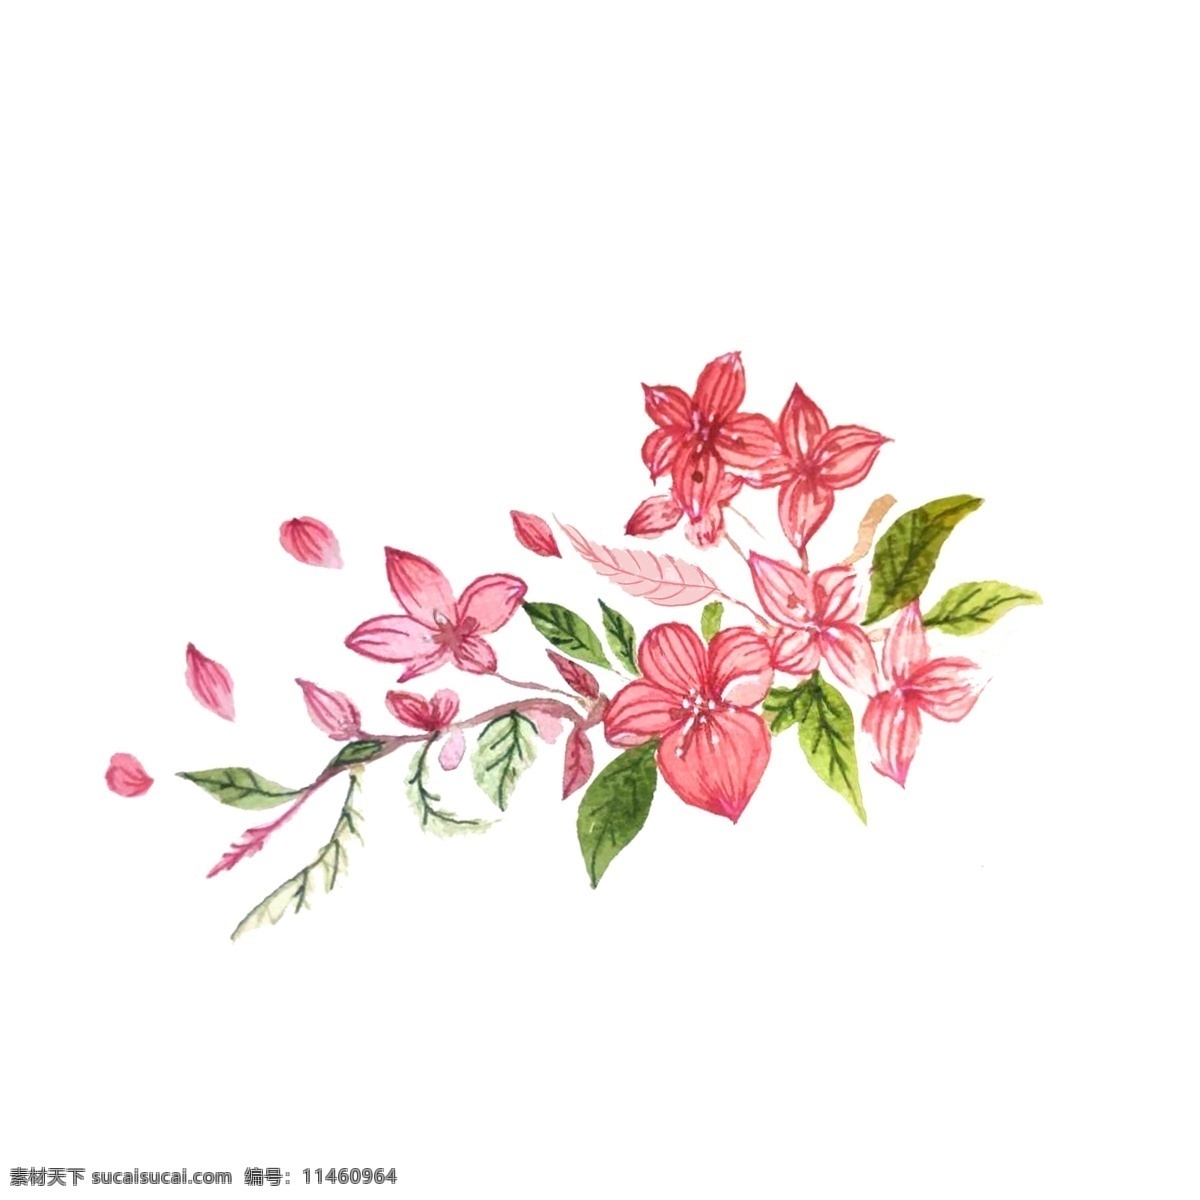 鲜花 节日 清丽 脱俗 美丽 漂亮花朵 粉色 绿色 花开 清香 纯洁 清新 清丽美人 高贵 唯美